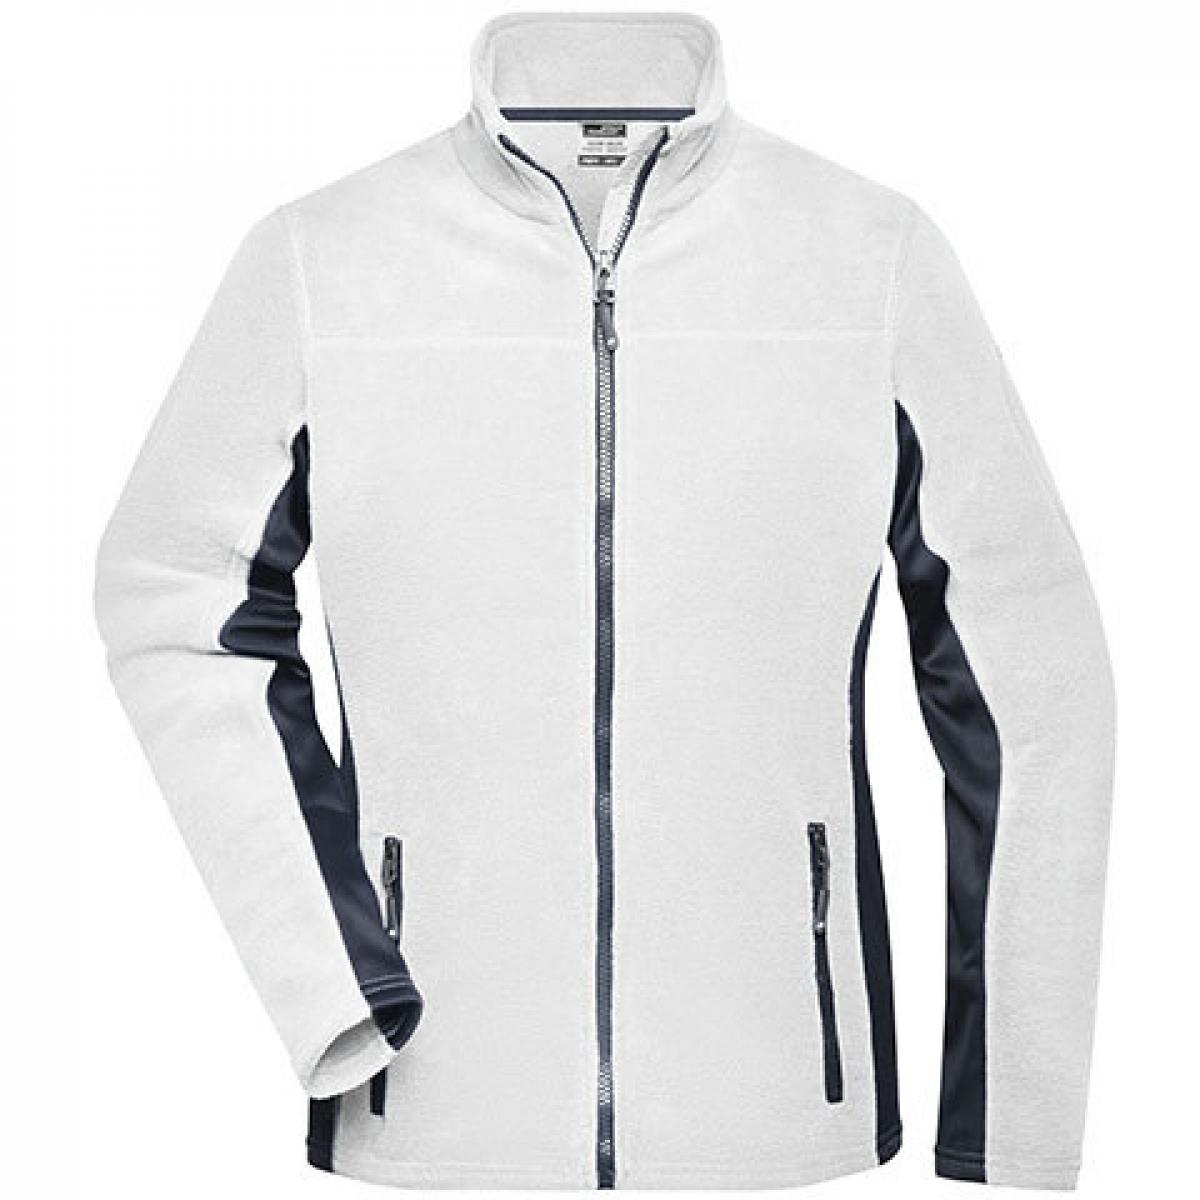 Hersteller: James+Nicholson Herstellernummer: JN841 Artikelbezeichnung: Damen‘ Workwear Fleece Jacket -STRONG- Farbe: White/Carbon